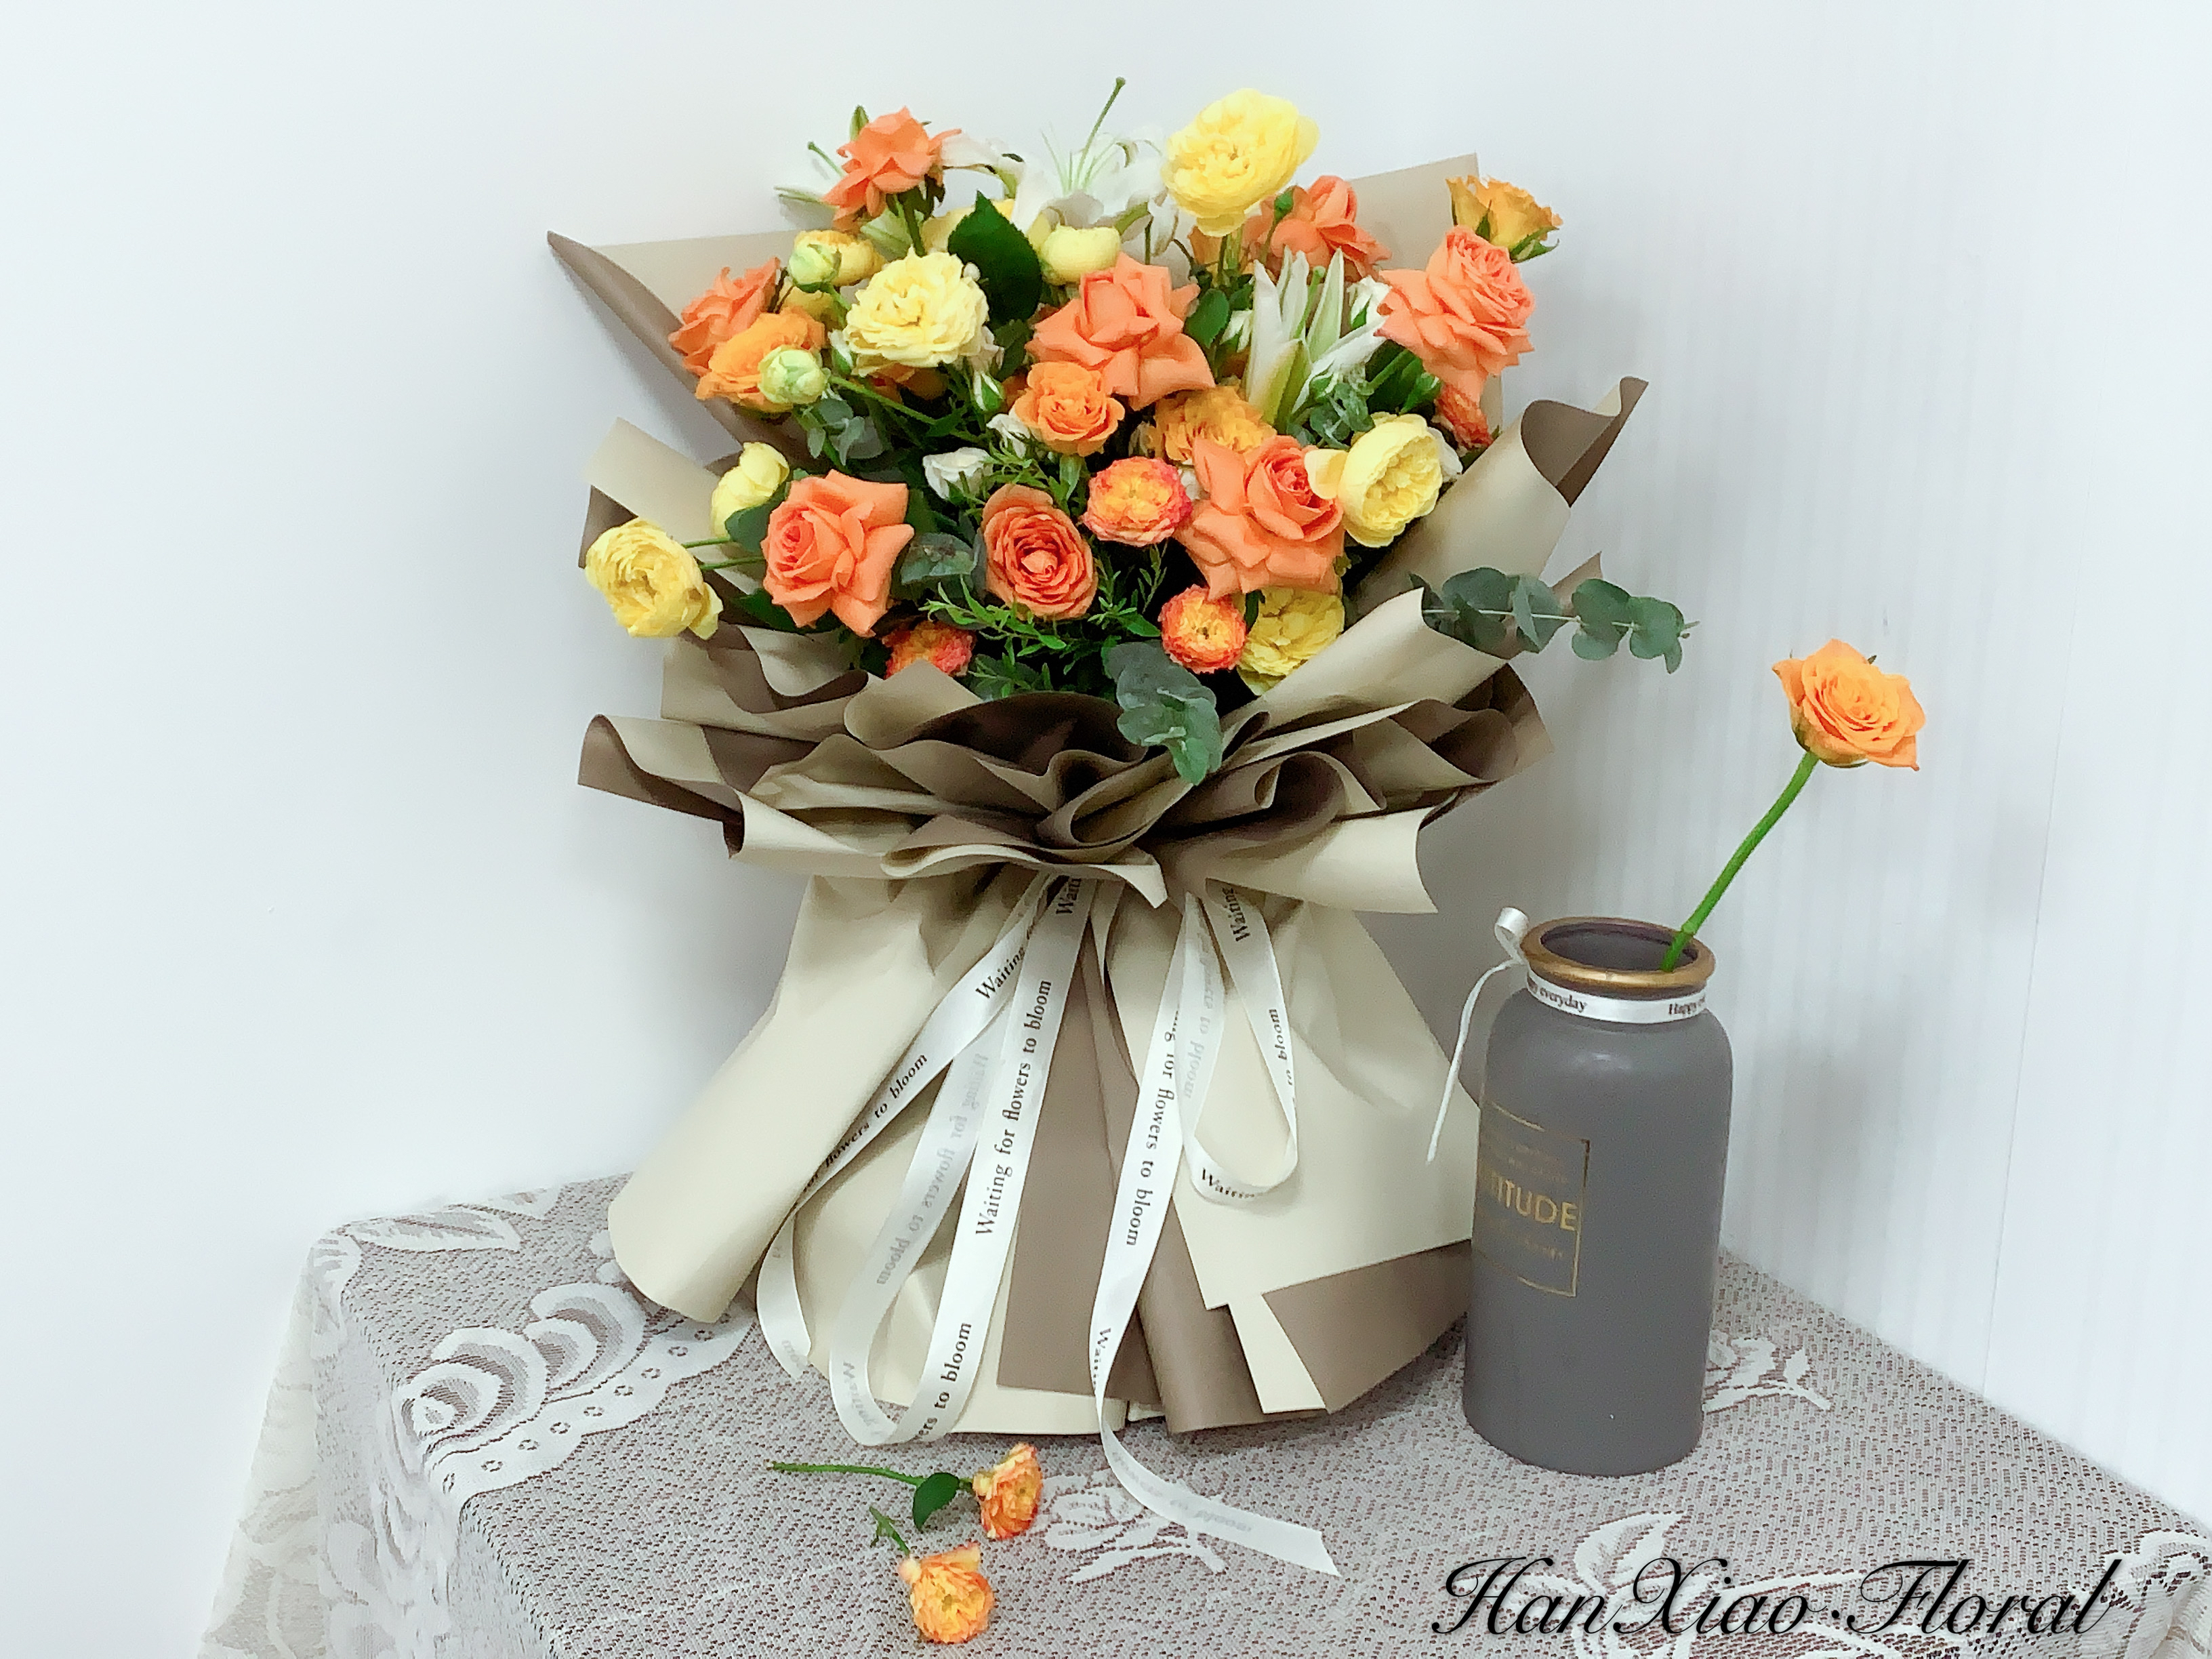 鲜花花束、礼仪花束、韩式花束